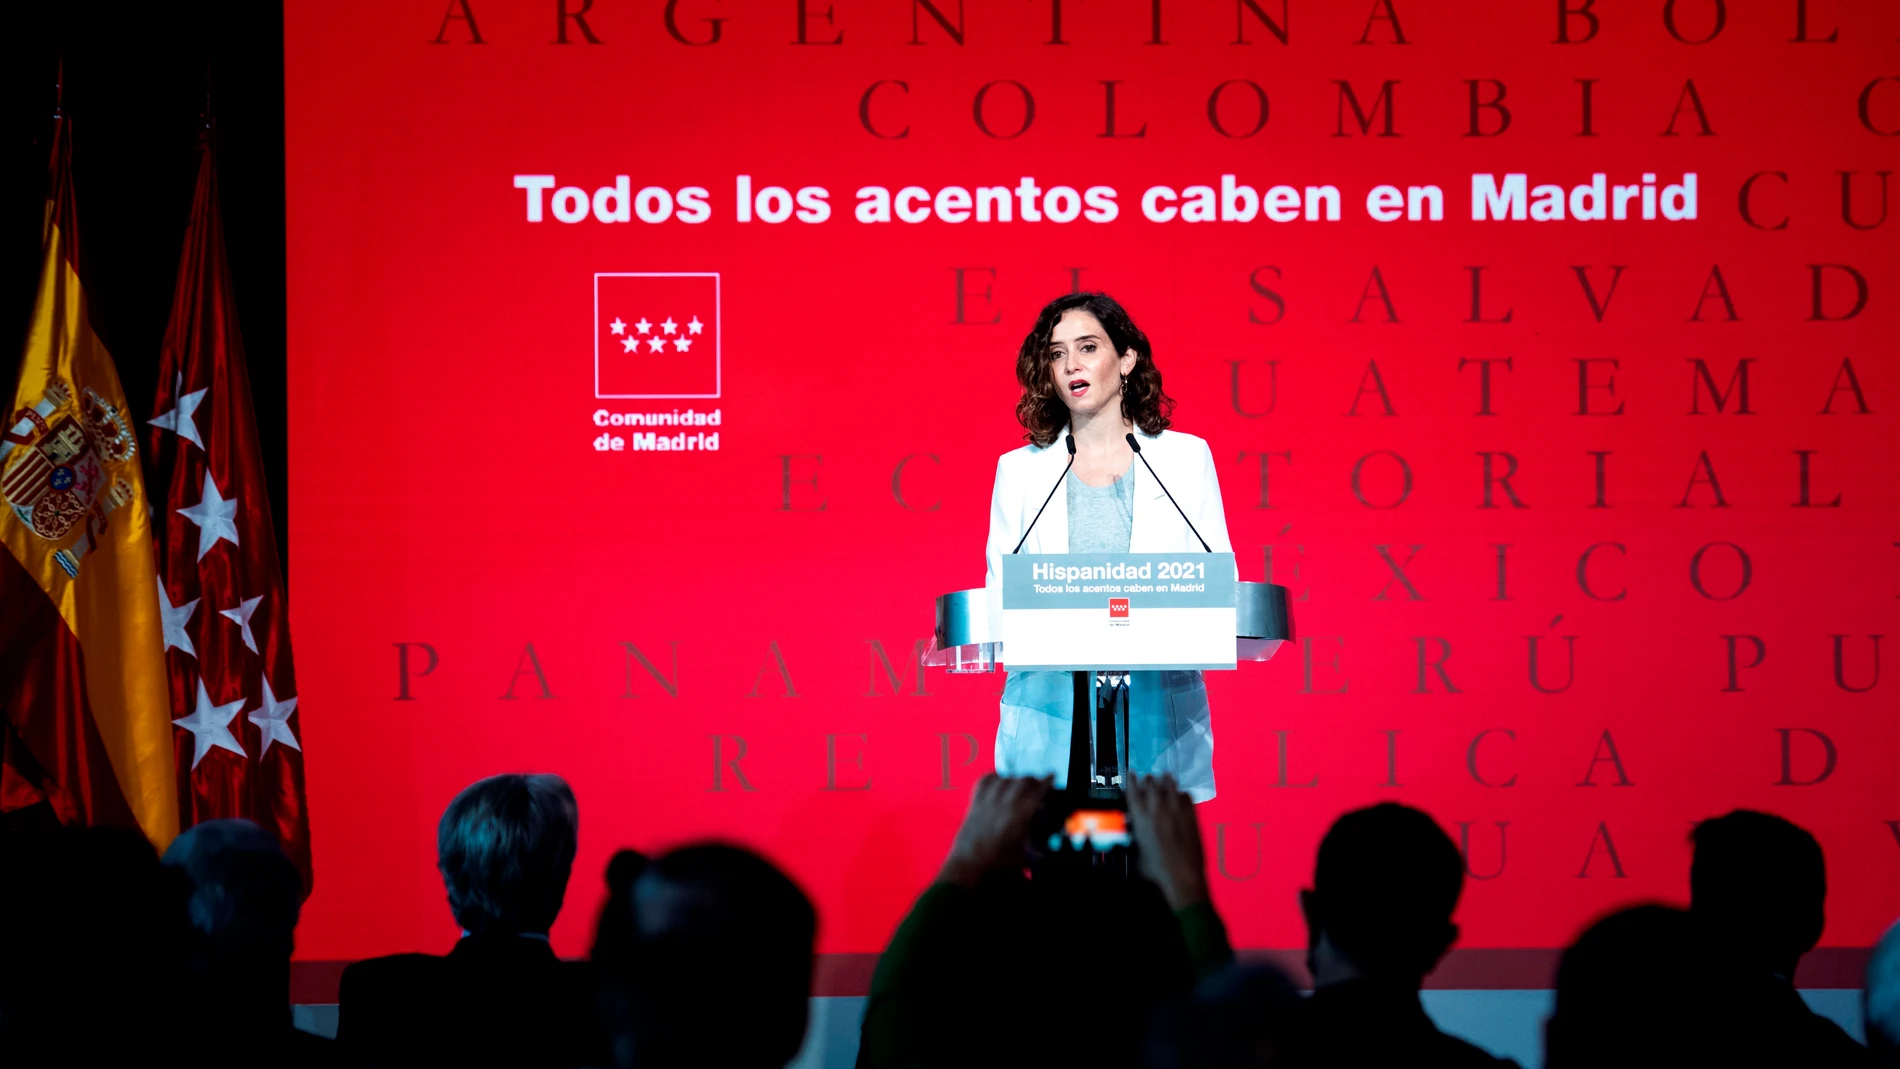 La presidenta de la Comunidad de Madrid, Isabel Díaz Ayuso, presenta la Oficina del Español y del próximo festival Hispanidad 2021, en un acto celebrado este viernes en el Círculo de Bellas Artes de Madrid